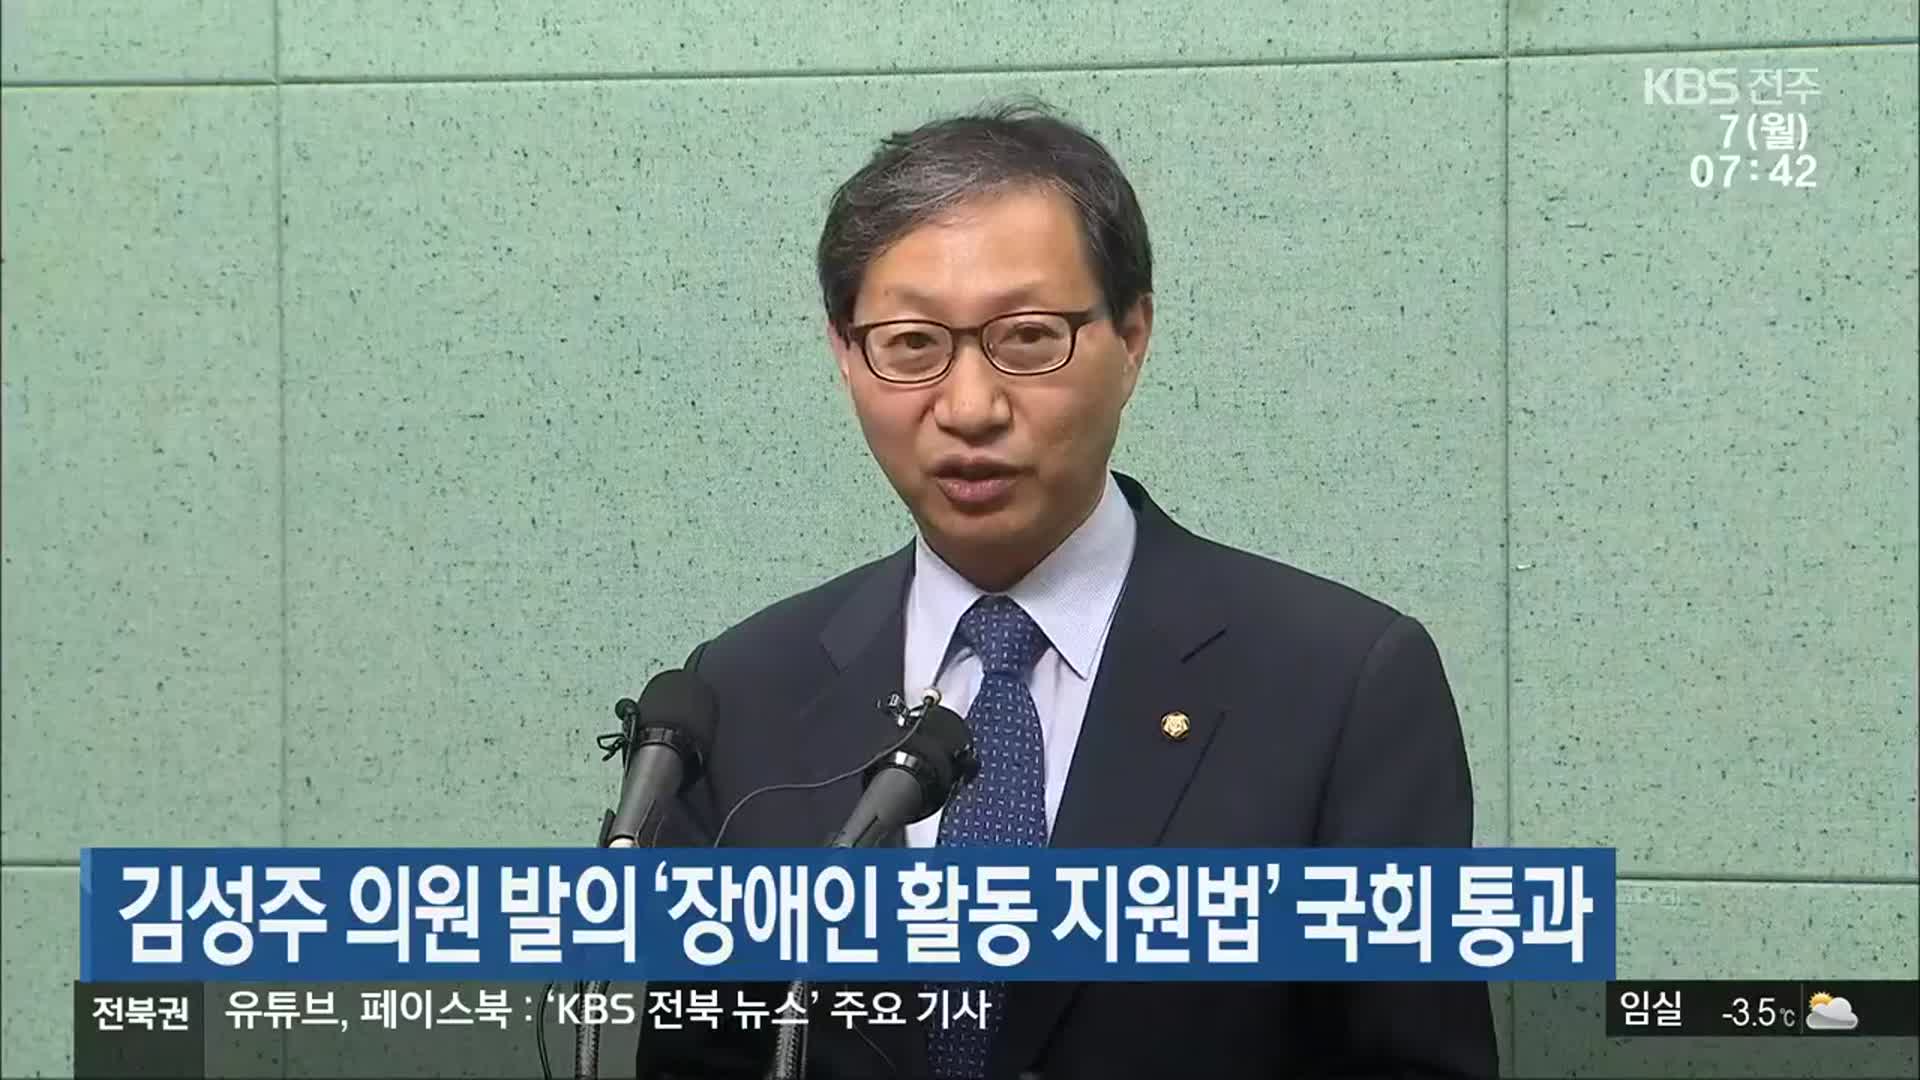 김성주 의원 발의 ‘장애인 활동 지원법’ 국회 통과